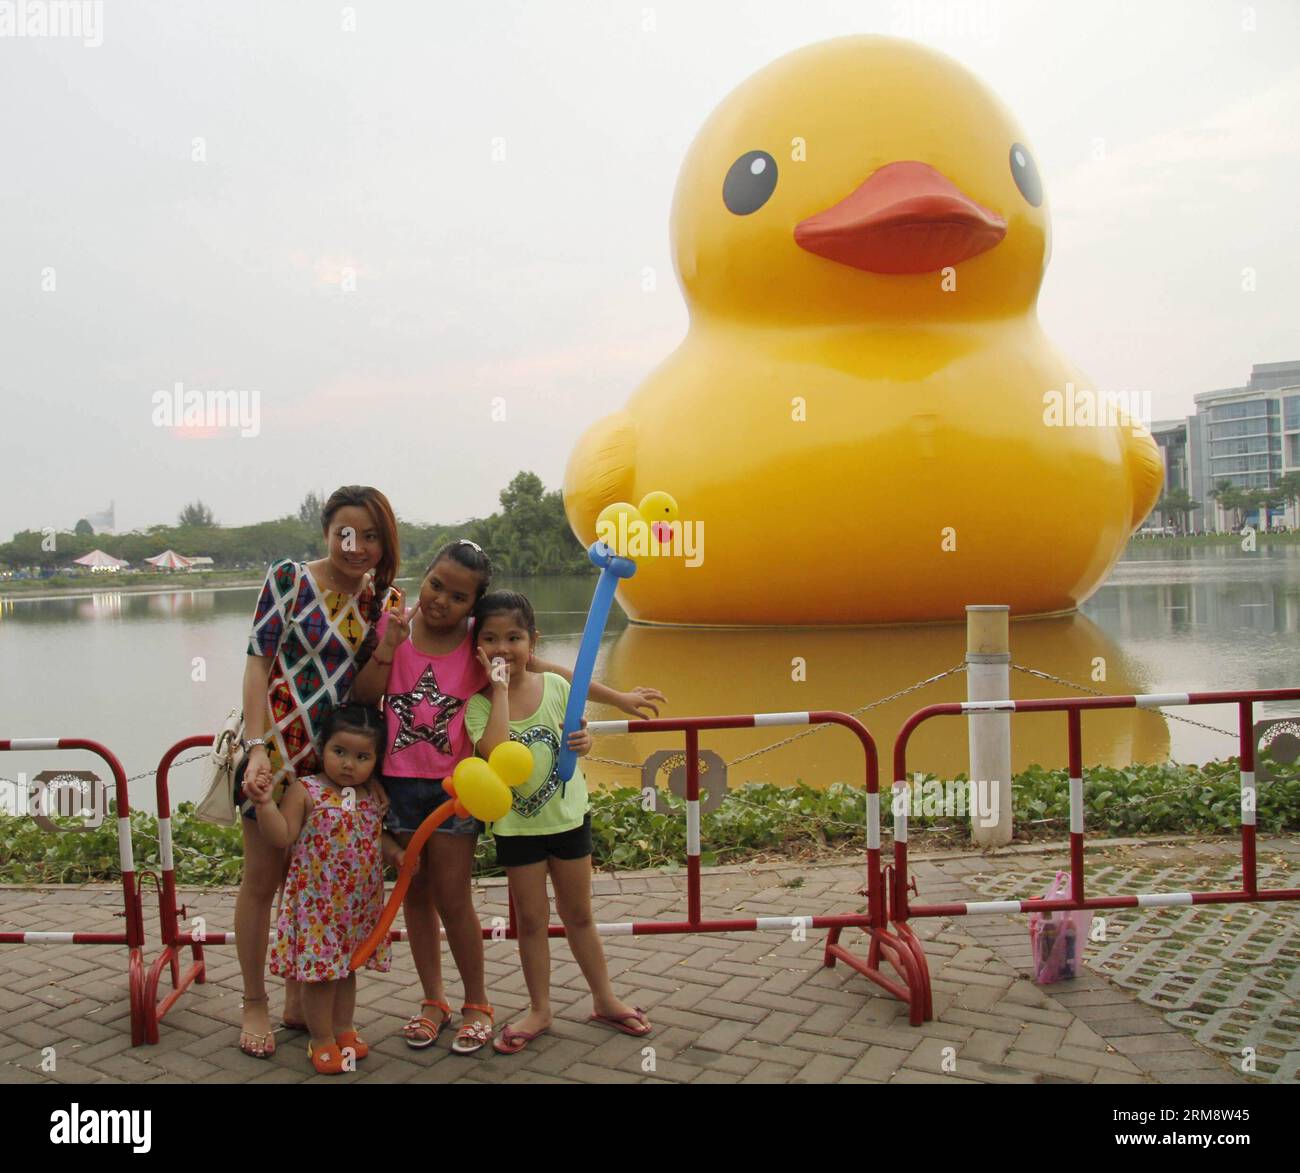 (140427) -- HO CHI MINH STADT, April 26 (Xinhua) -- Menschen posieren für Fotos mit der riesigen Gummiente in der Phu My Hung Wohngegend in Ho Chi Minh (HCM) Stadt, Vietnam, 26. April 2014. Eine 18 Meter hohe Gummiente, die Menschen auf der ganzen Welt in ihren Bann gezogen hat, wird am Crescent Lake im Wohngebiet Phu My Hung der HCM-Stadt von April 27 bis Mai 31 ausgestellt, berichteten lokale Medien am Samstag. Die Gummiente wurde vom niederländischen Künstler Florentijn Hofman entworfen und startete 2007 eine Tour mit dem Namen Spread Joys Around the World. HCM City ist der 16. Veranstaltungsort, an dem es angezeigt wird. (Xinhua/Tao Jun) Stockfoto